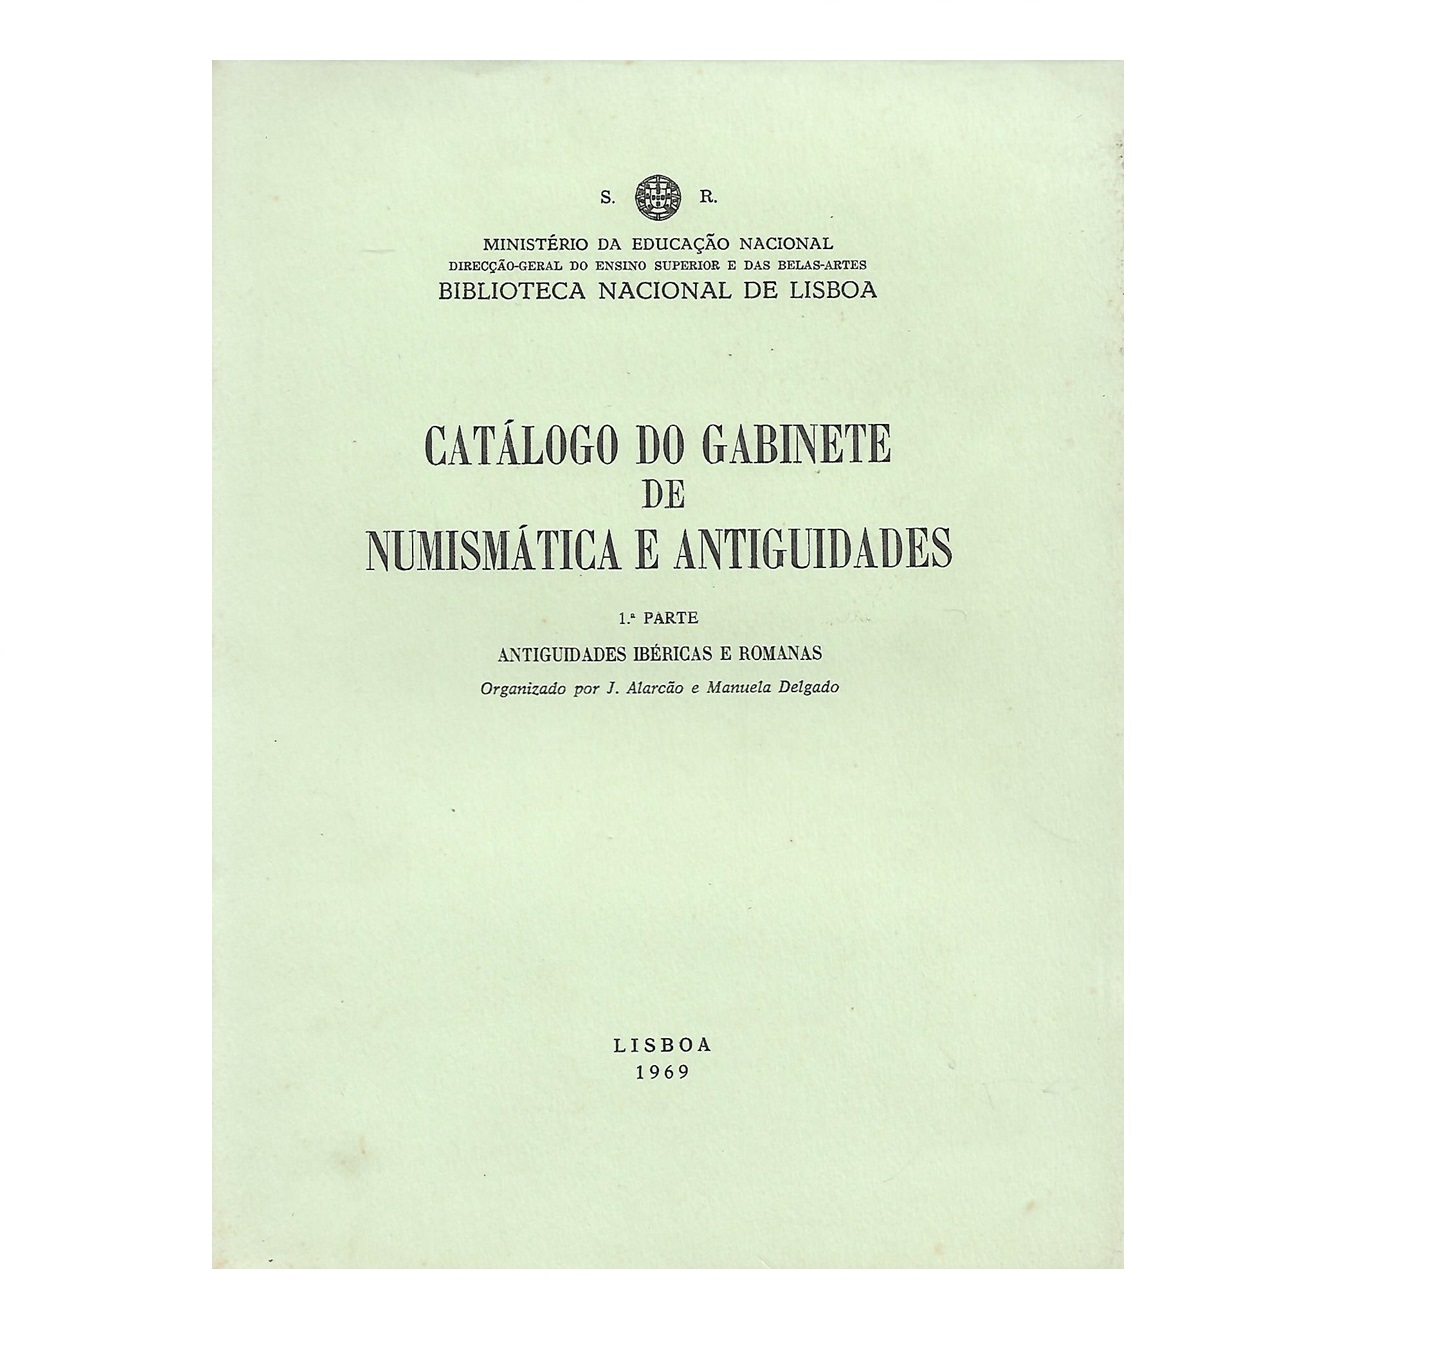 Catálogo do Gabinete de Numismática e Antiguidades